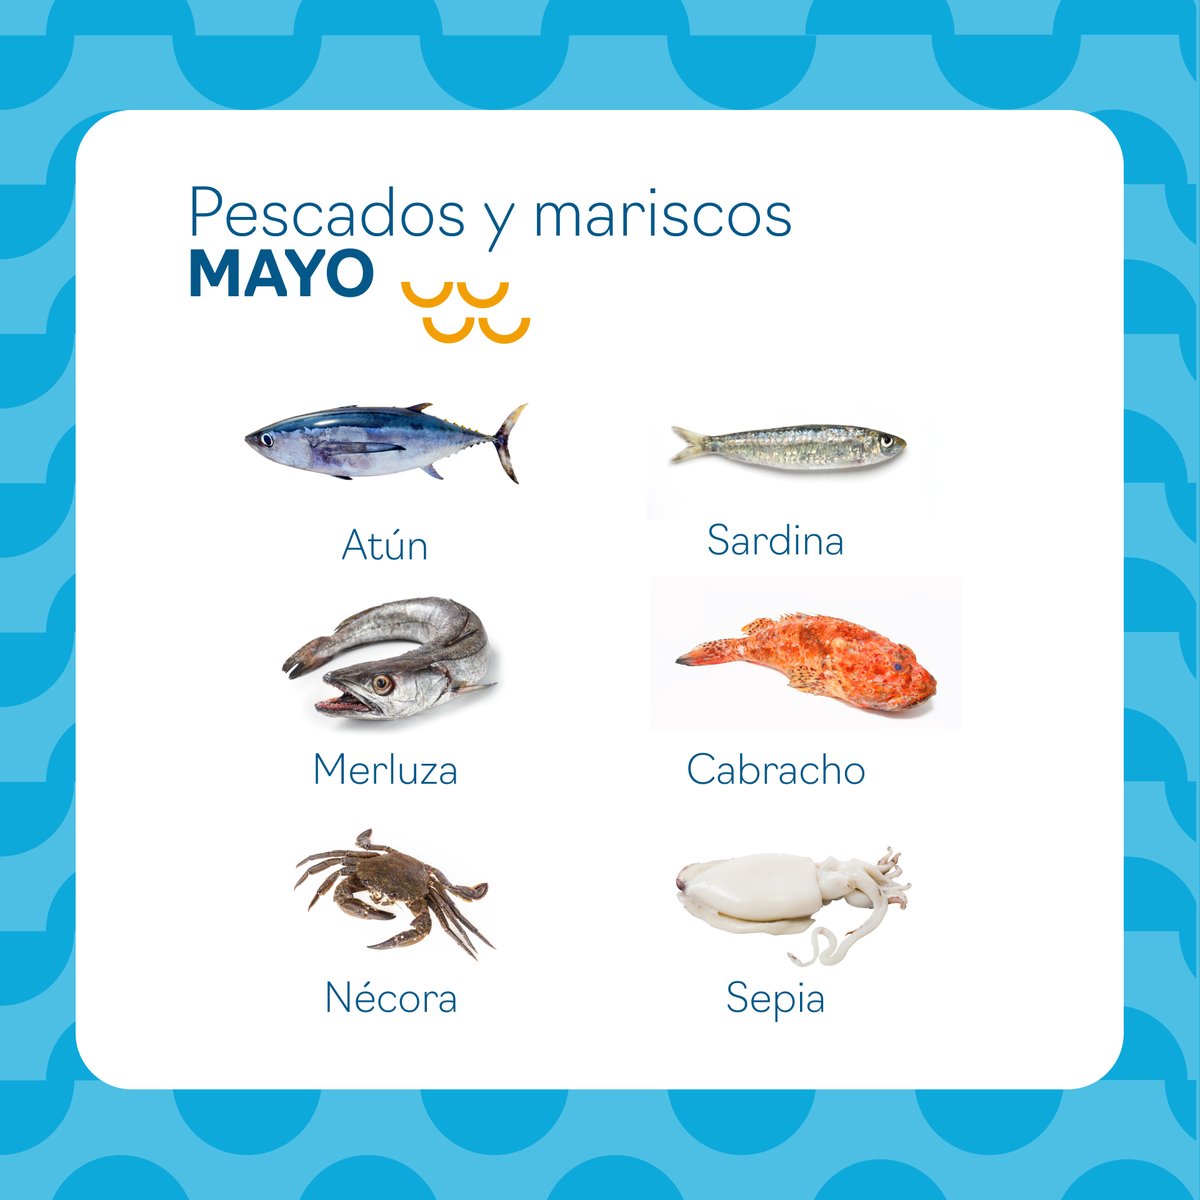 ¡PESCADOS DE #TEMPORADA DE MAYO! 

👉🏼 Estos son algunos de los productos del mar de este mes 🐟🦐 ¡#LlévatePescado y disfruta de su auténtico sabor! Y tú ¿te animas a preparar alguno?

#PescaEspaña #FuenteDeFelicidad #NutriPesca